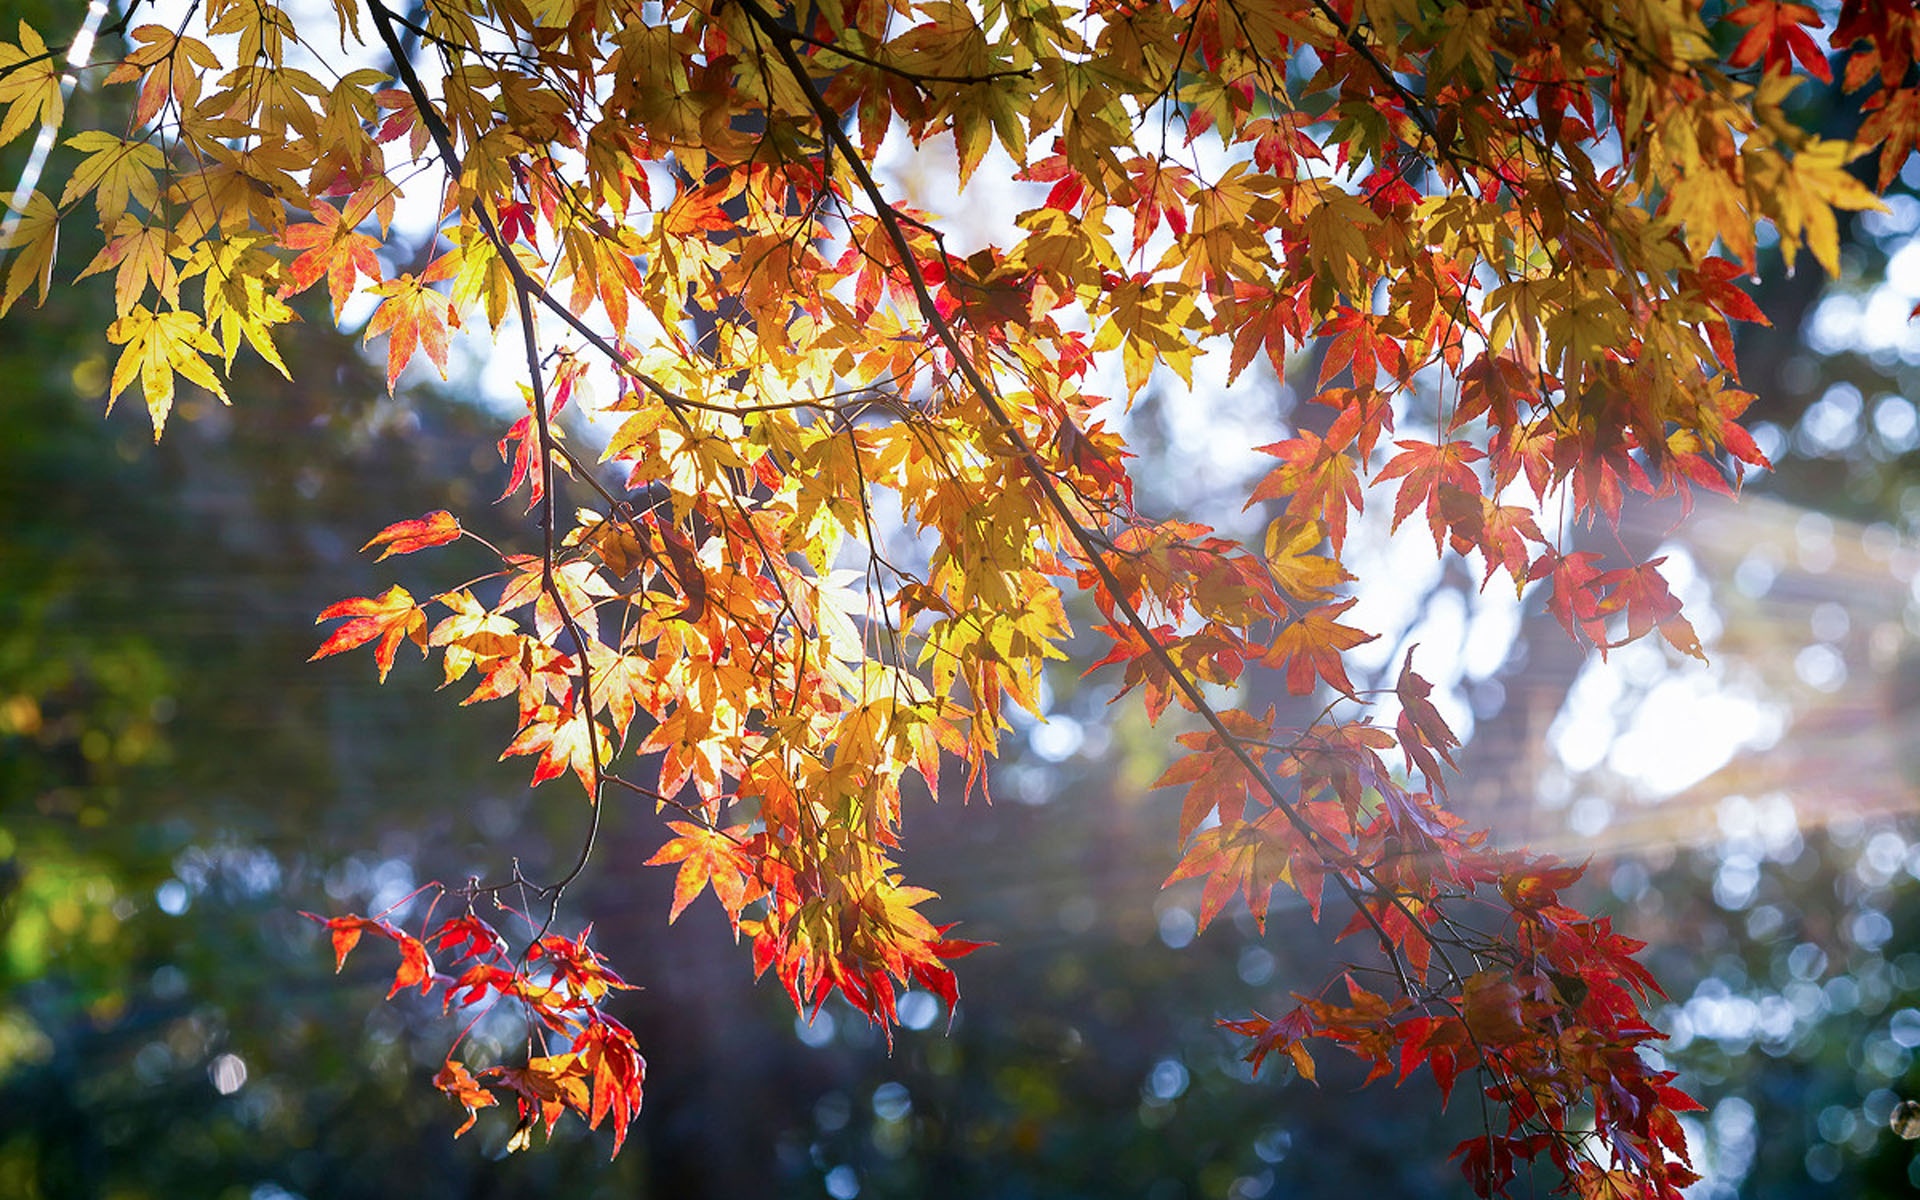 枫叶风景图片大全 唯美秋季红枫叶高清桌面壁纸(3)